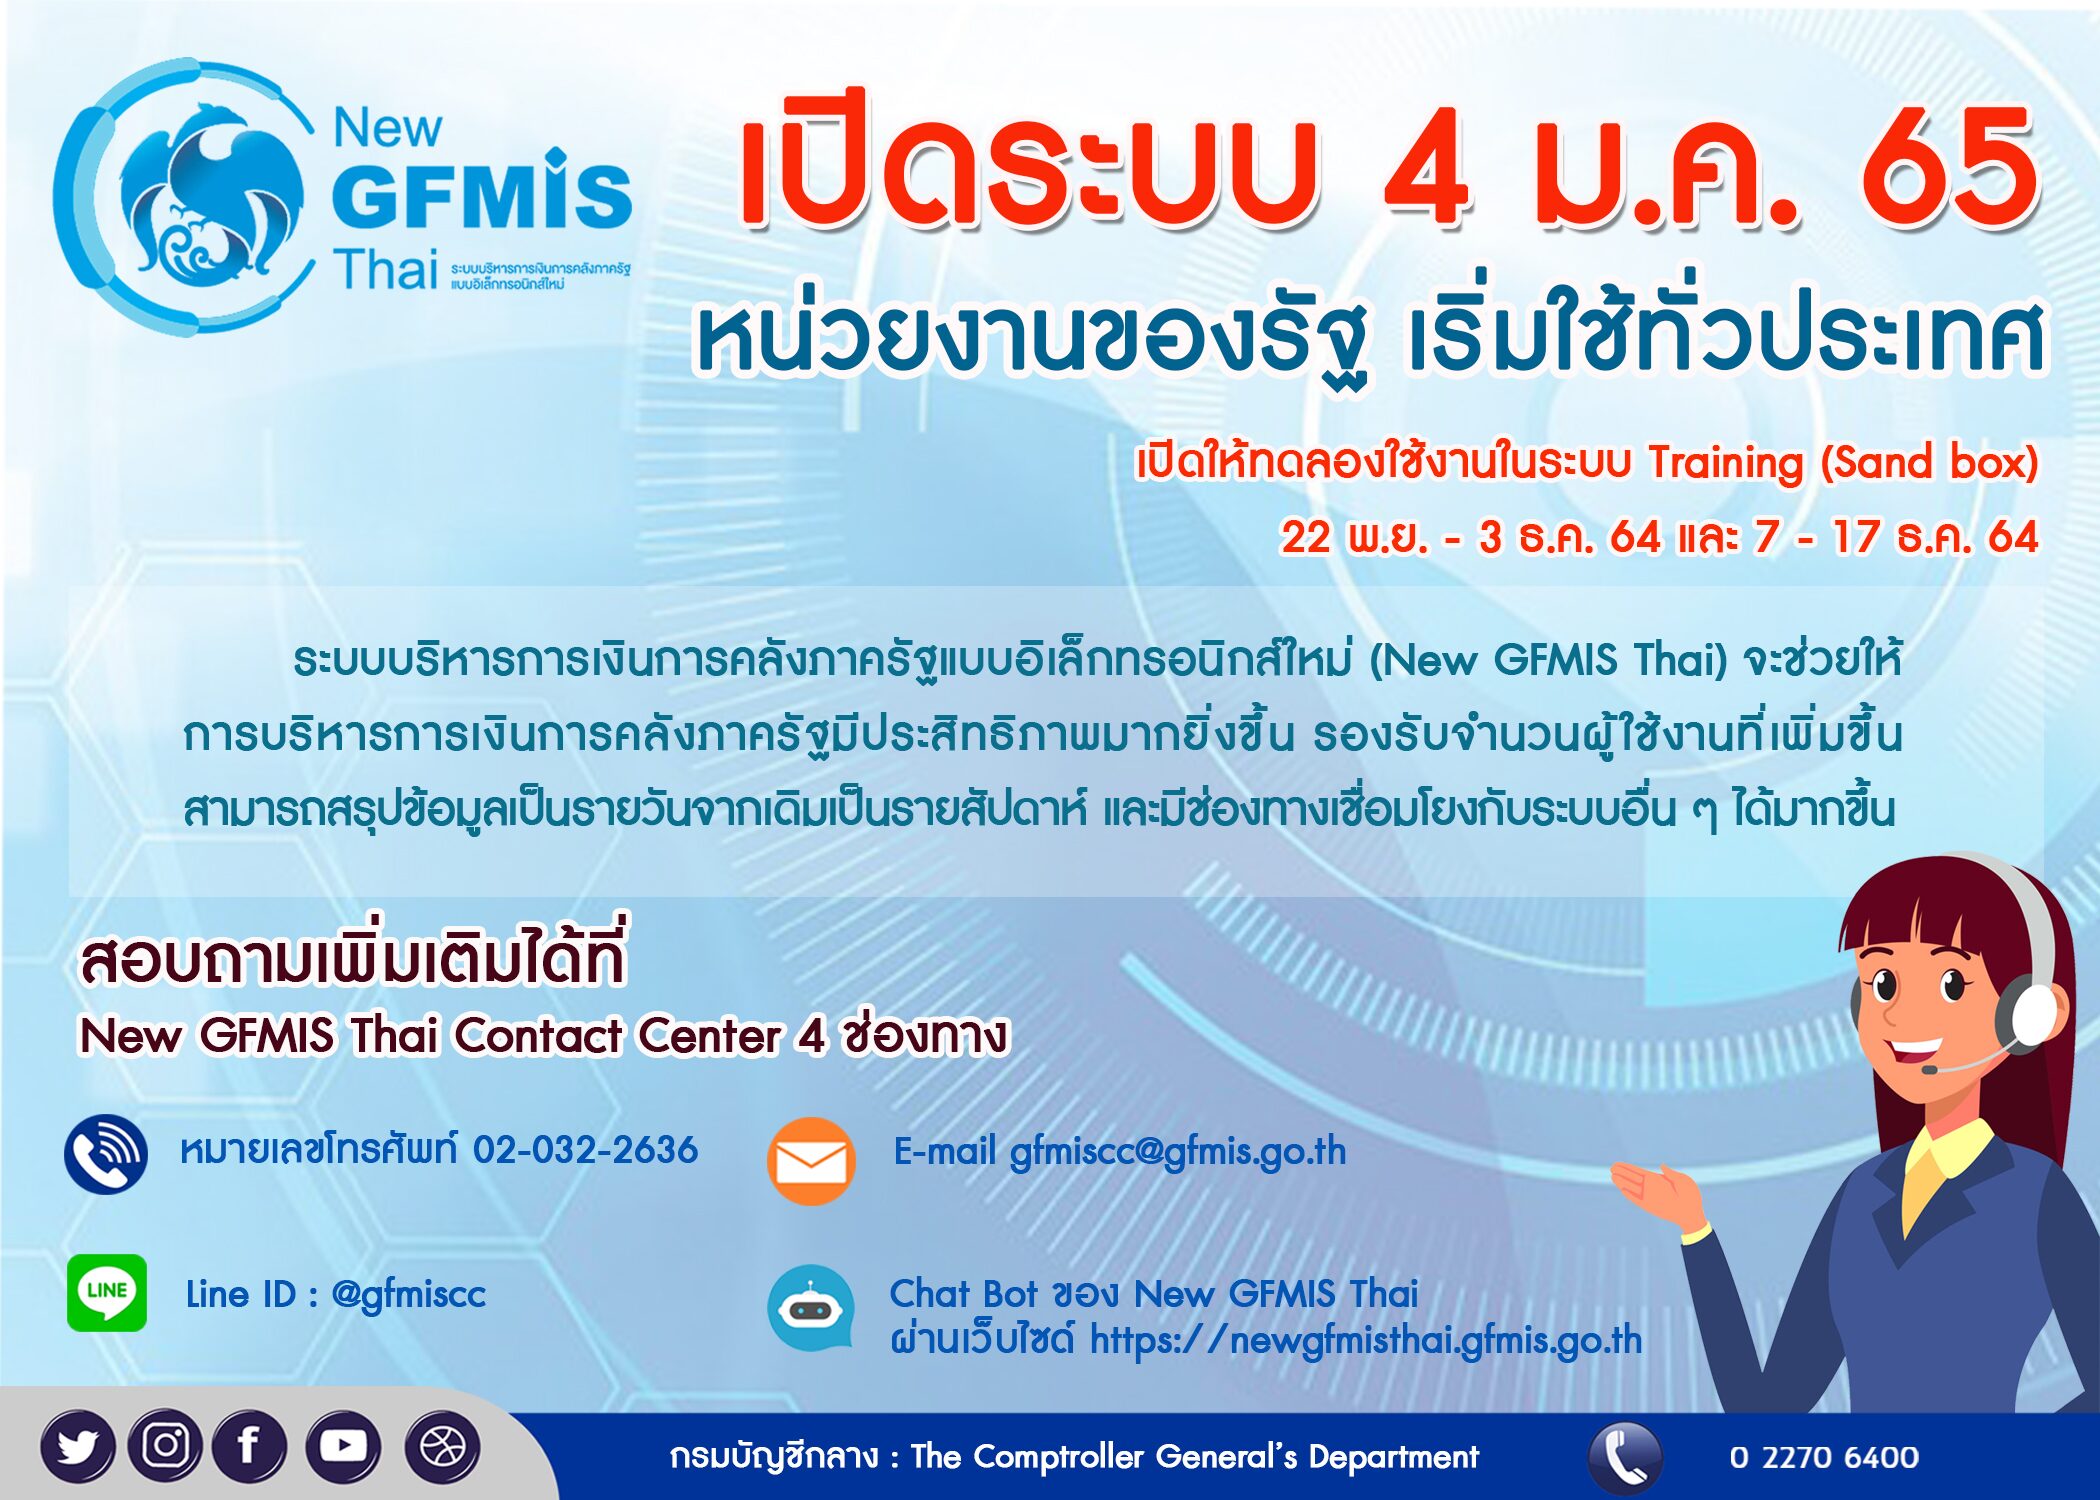 "บัญชีกลาง" เปิดระบบบริหารการเงินการคลังภาครัฐ New GFMIS Thai 4 ม.ค.65 นี้